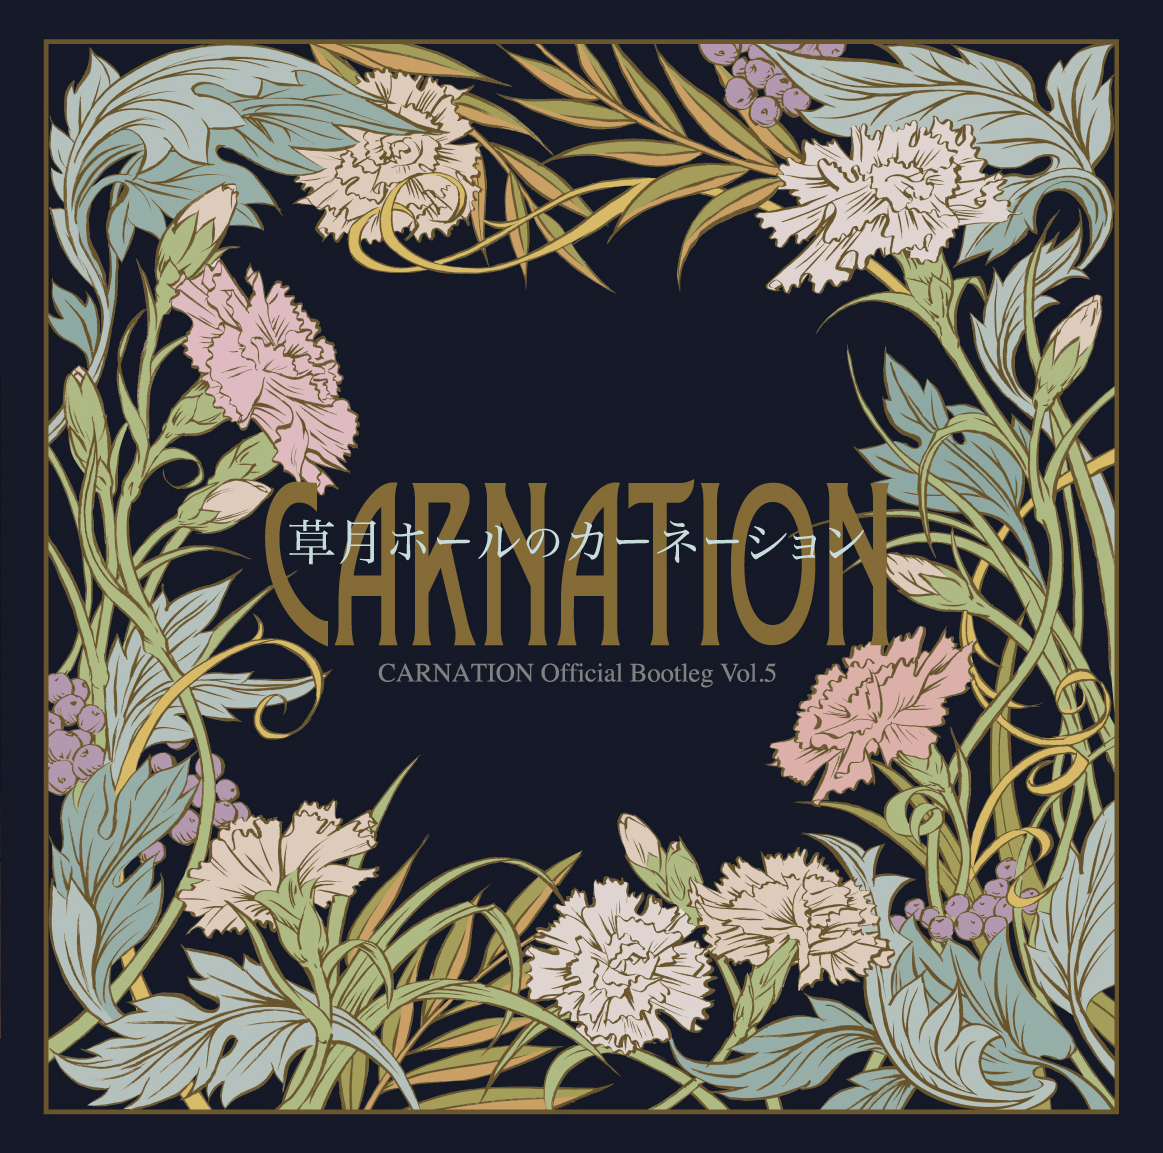 カーネーション『CARNATION Official Bootleg Vol.5 草月ホールのカーネーション』